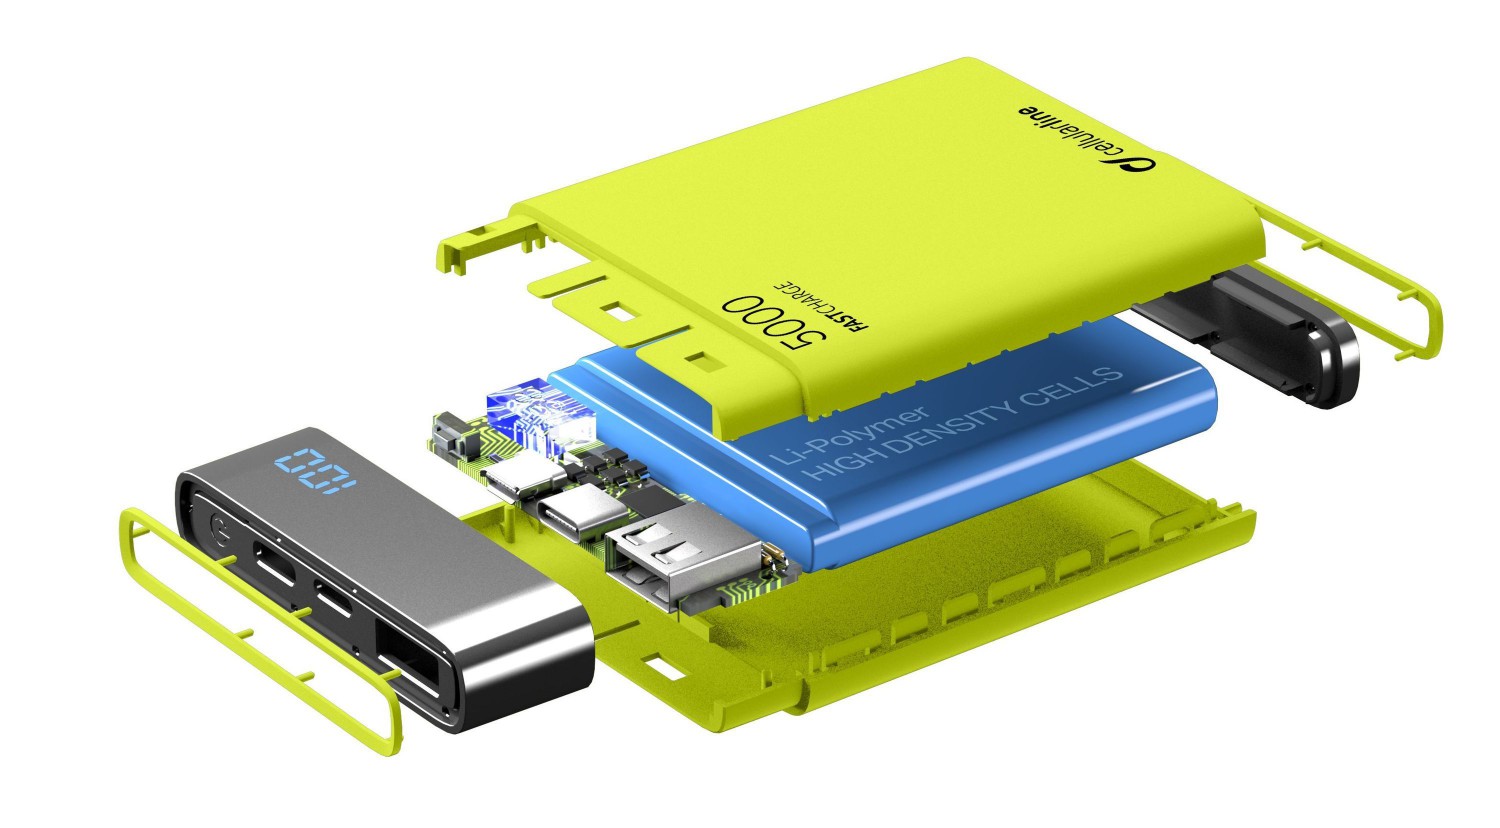 Kompaktní powerbanka Cellularline FreePower Manta HD, 5000 mAh, USB-C + USB port, rychlé nabíjení, zelená